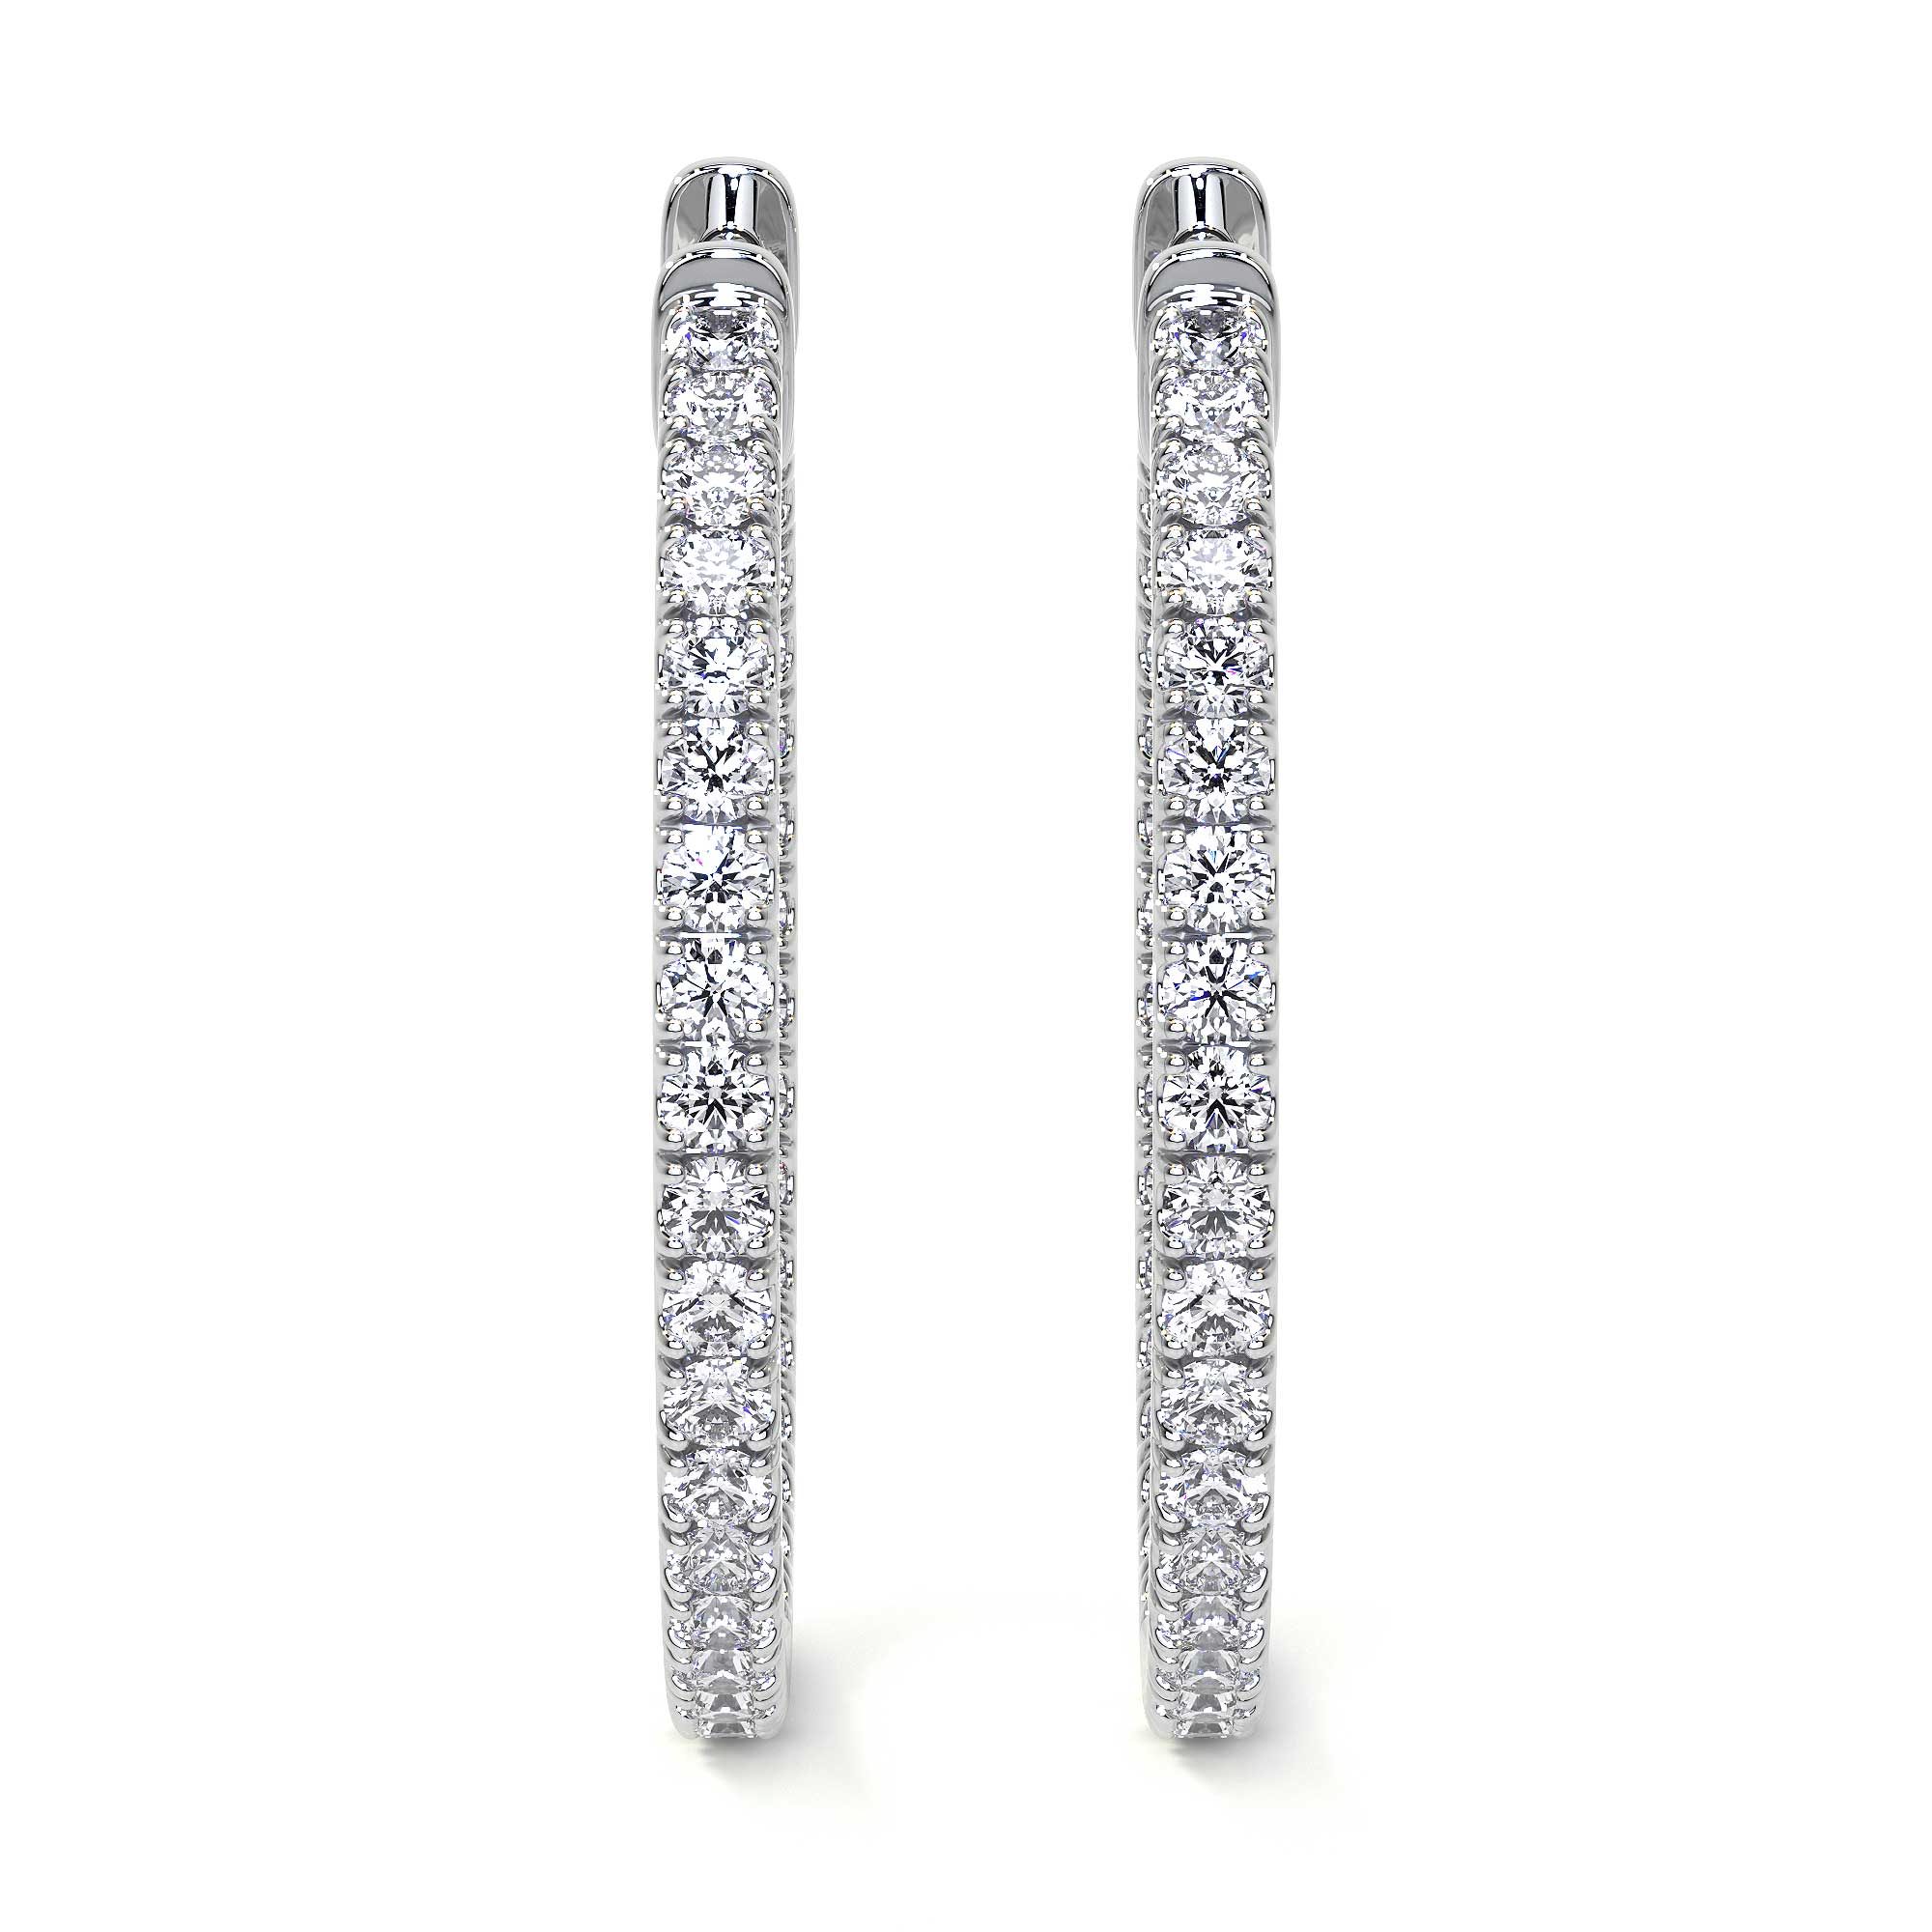 Round Diamond Hoop Earrings, X-Large - Earrings - Leviev Diamonds